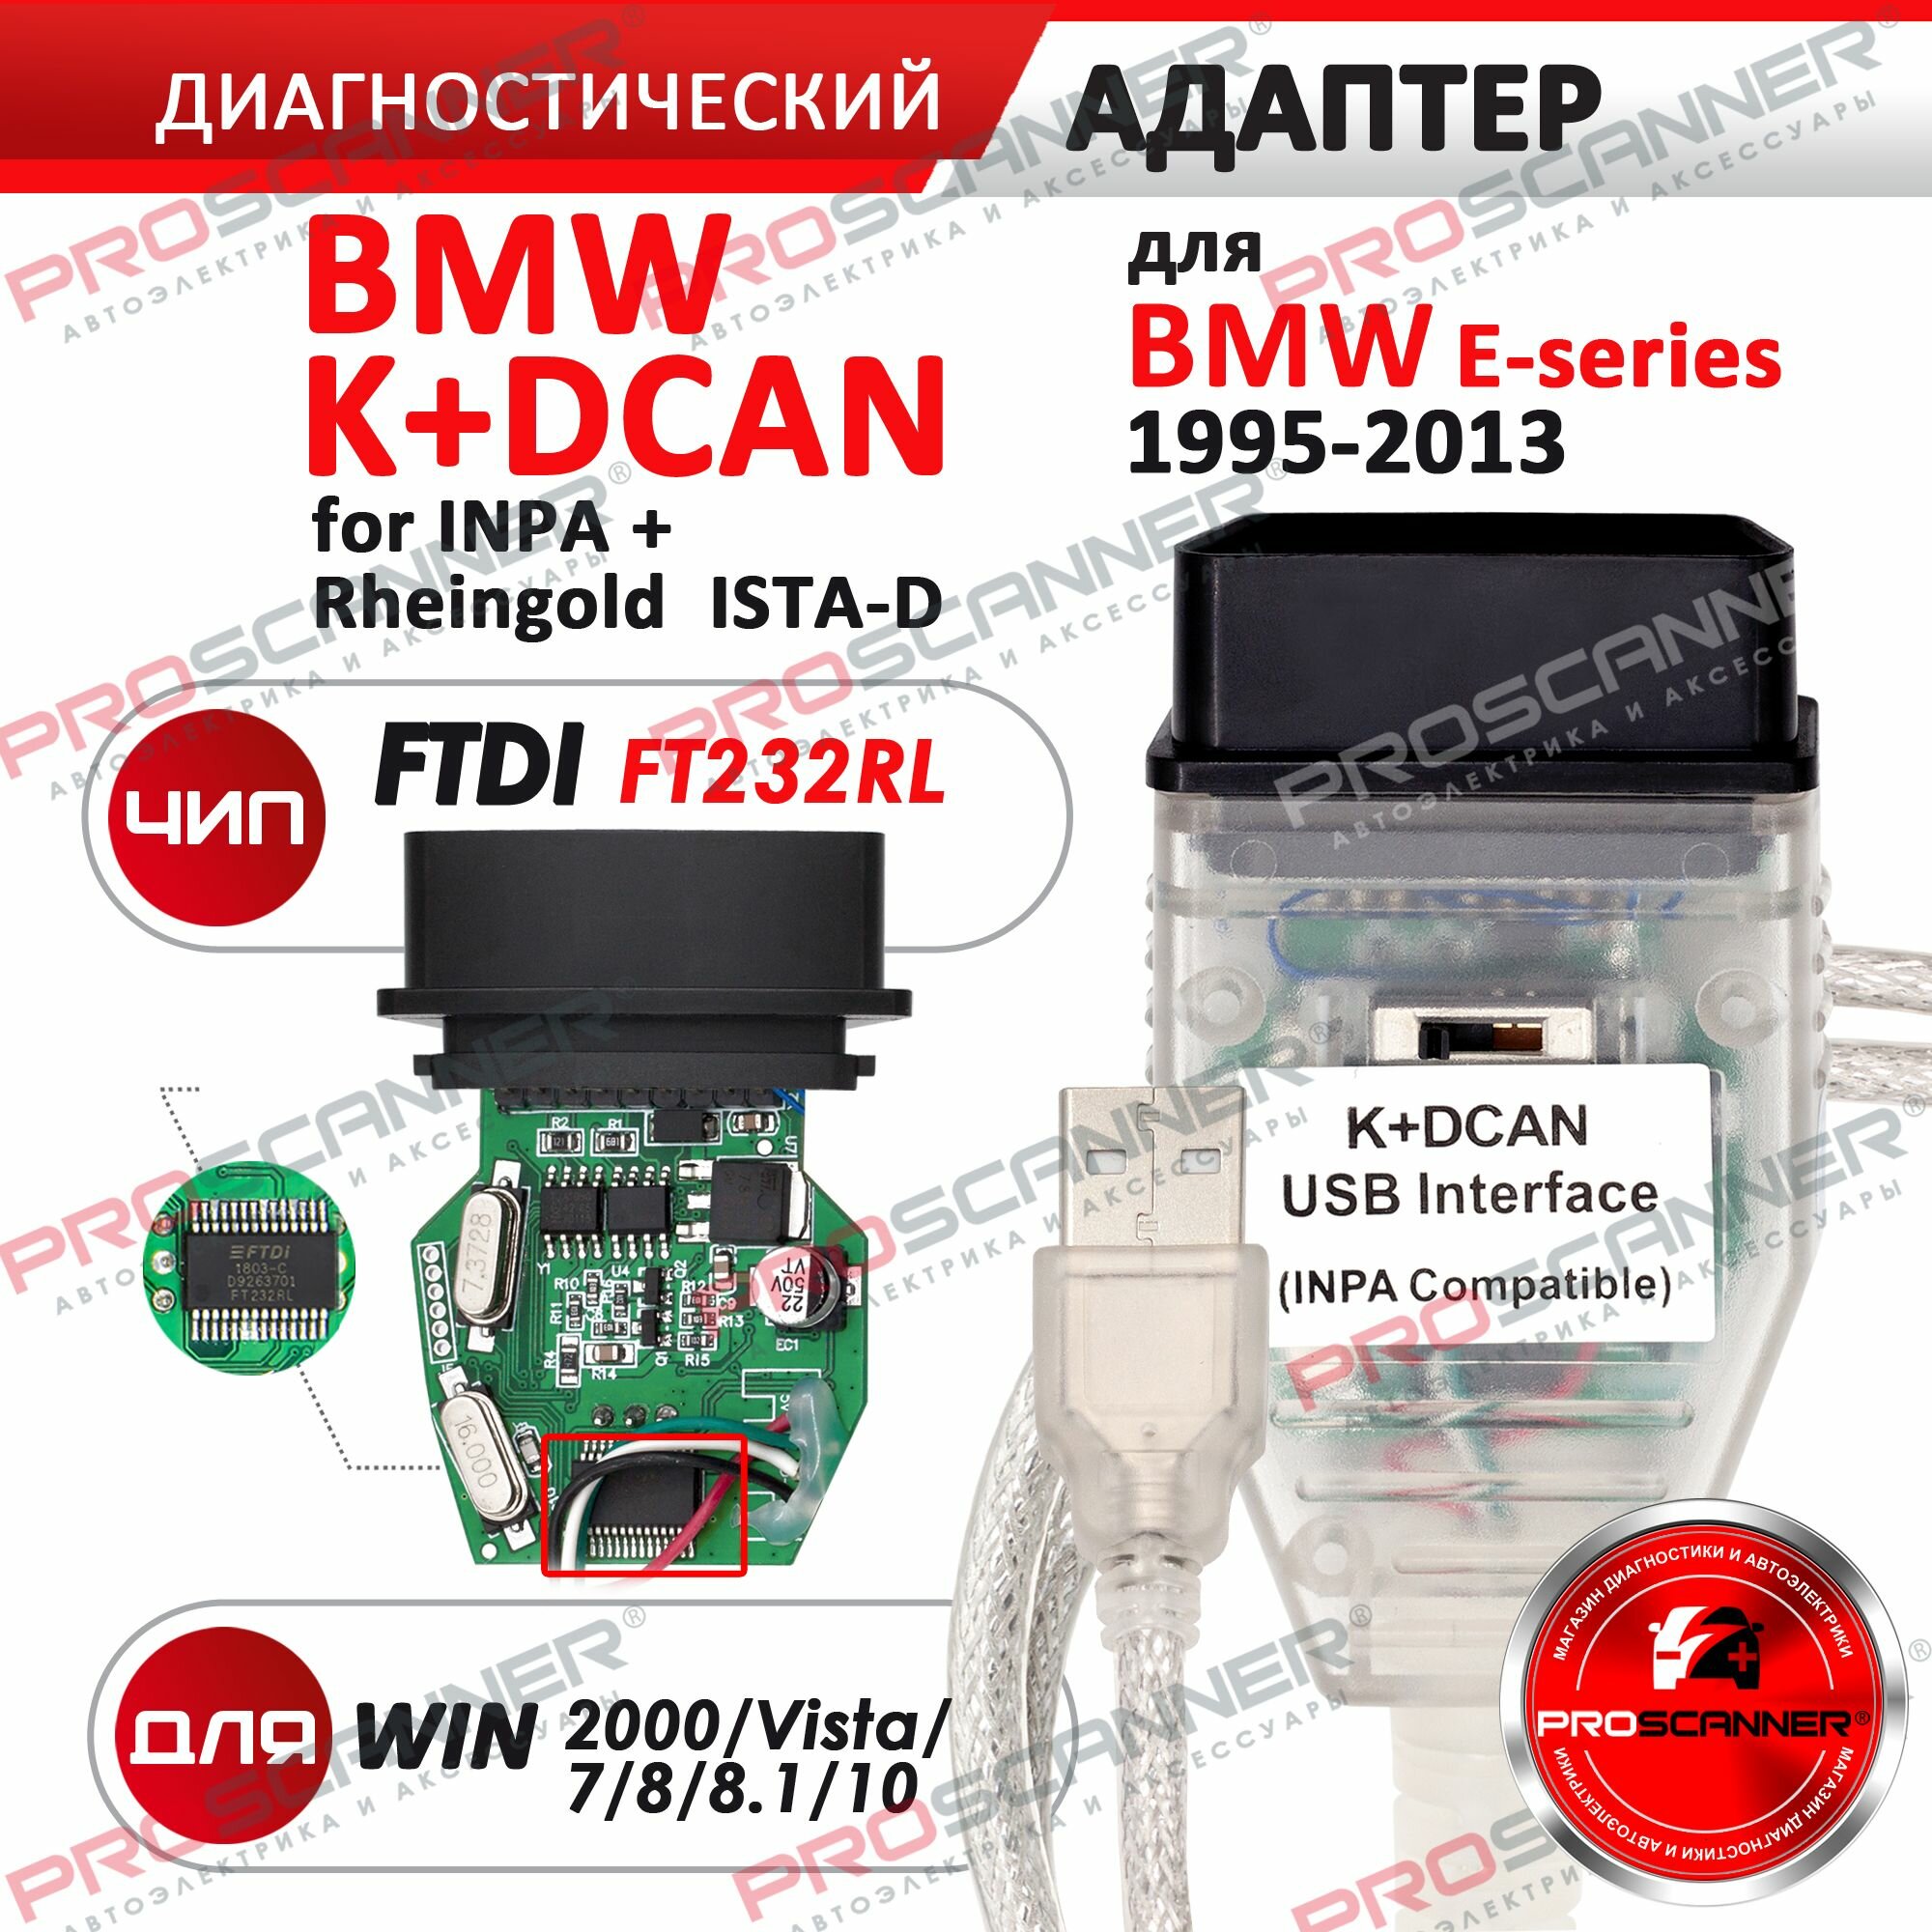 Автосканер для БМВ Inpa K+Dcan с переключателем для E-серии 1995-2013 год / Адаптер БМВ для диагностики